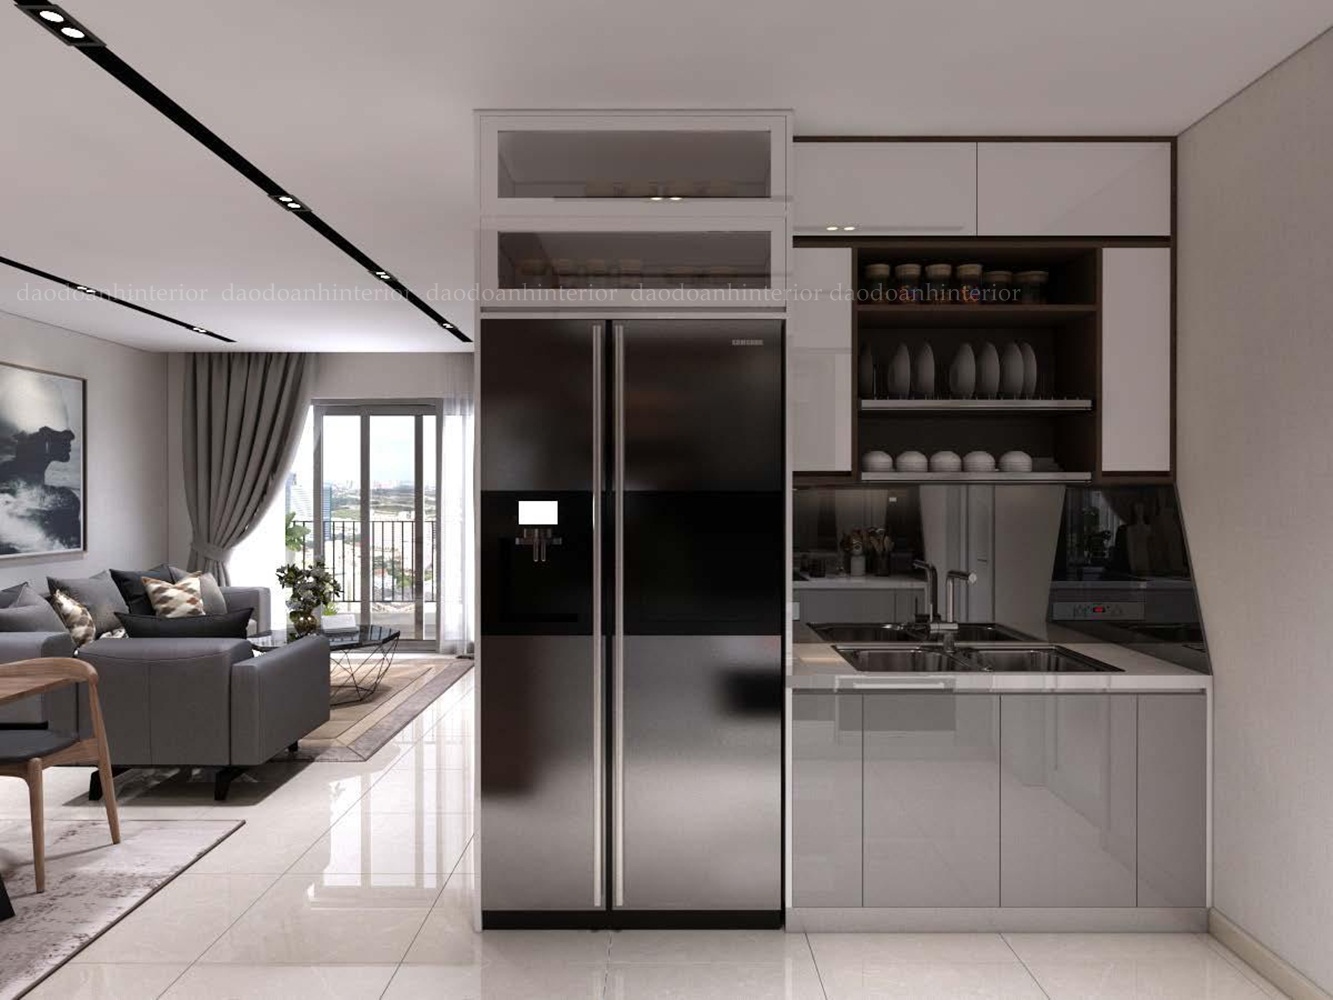 Mẫu thiết kế nội thất nhà bếp với không gian hẹp bề ngang